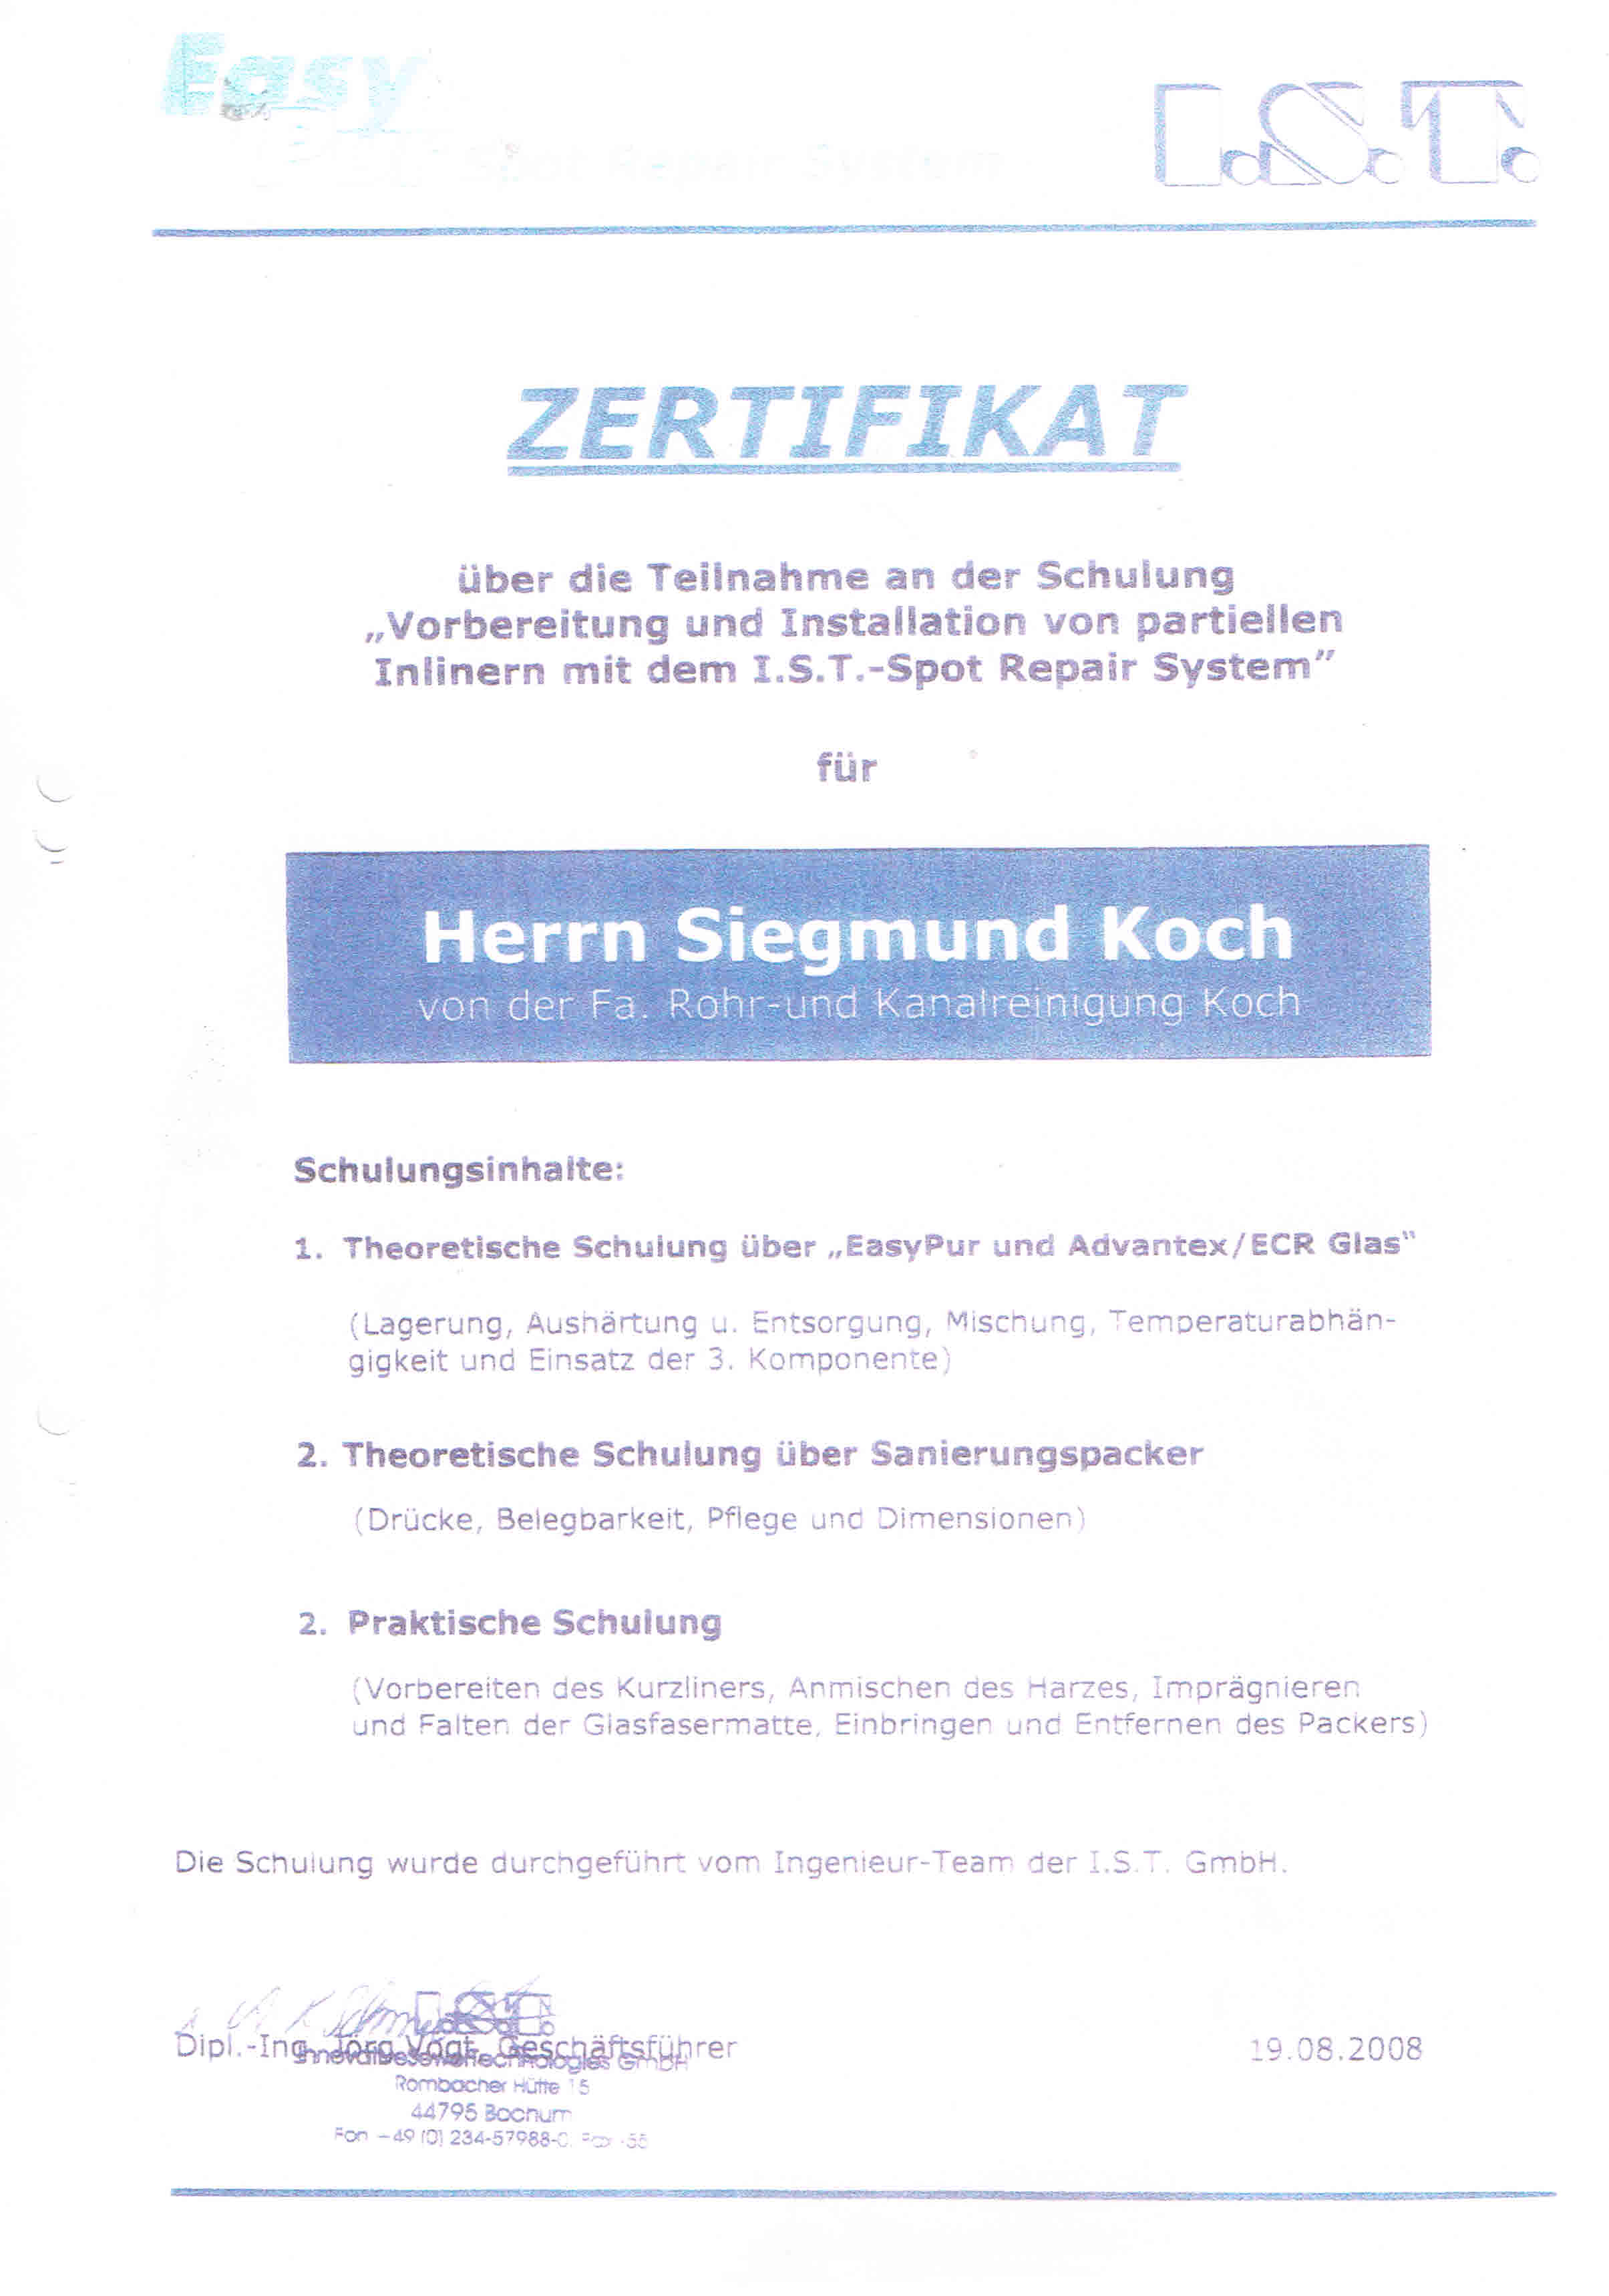 Zertifikat Schulung Vorbereitung und Installation von partiellen Inlinern mit dem I.S.T.-Spot Repair System Siegmund Koch